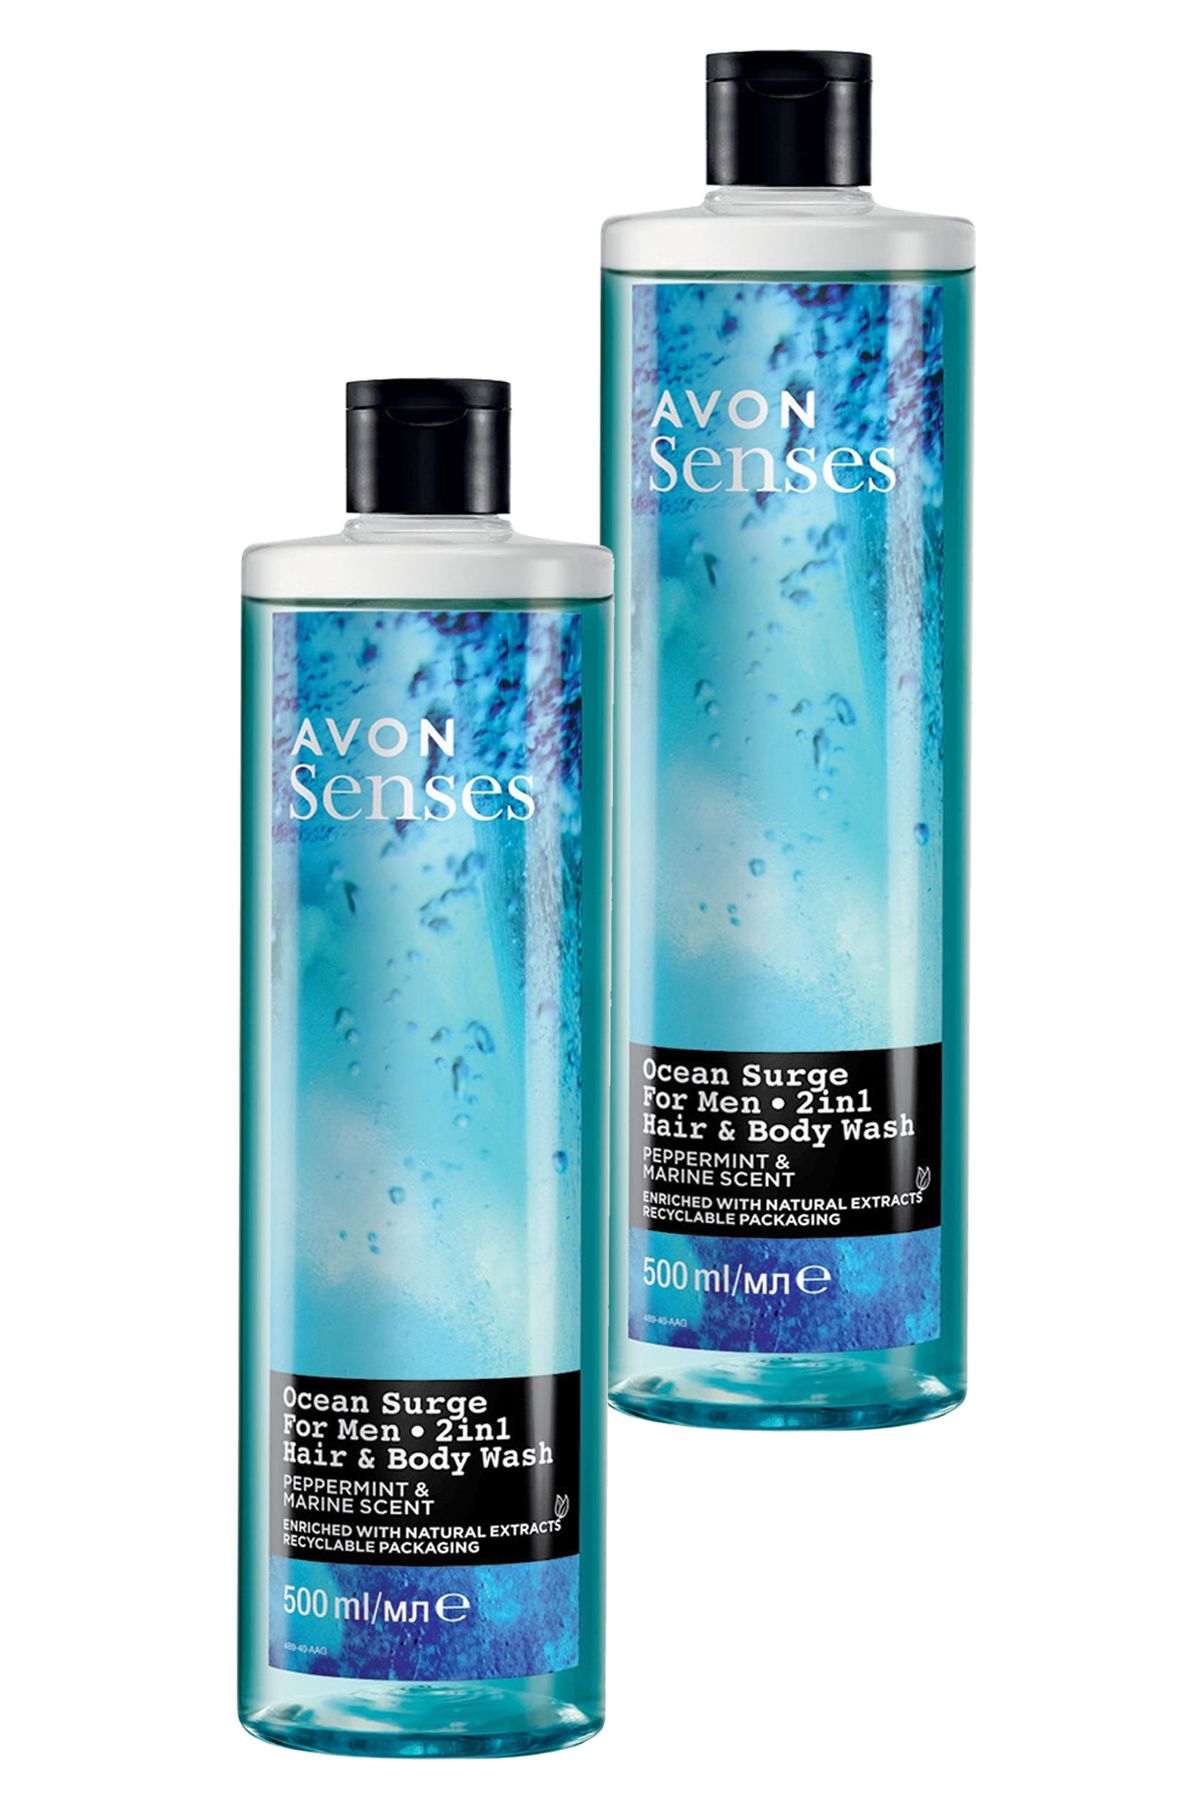 Avon Senses Ocean Surge Nane ve Deniz Kokulu Saç ve Vücut için Erkek Duş Jeli 500 Ml. İkili Set